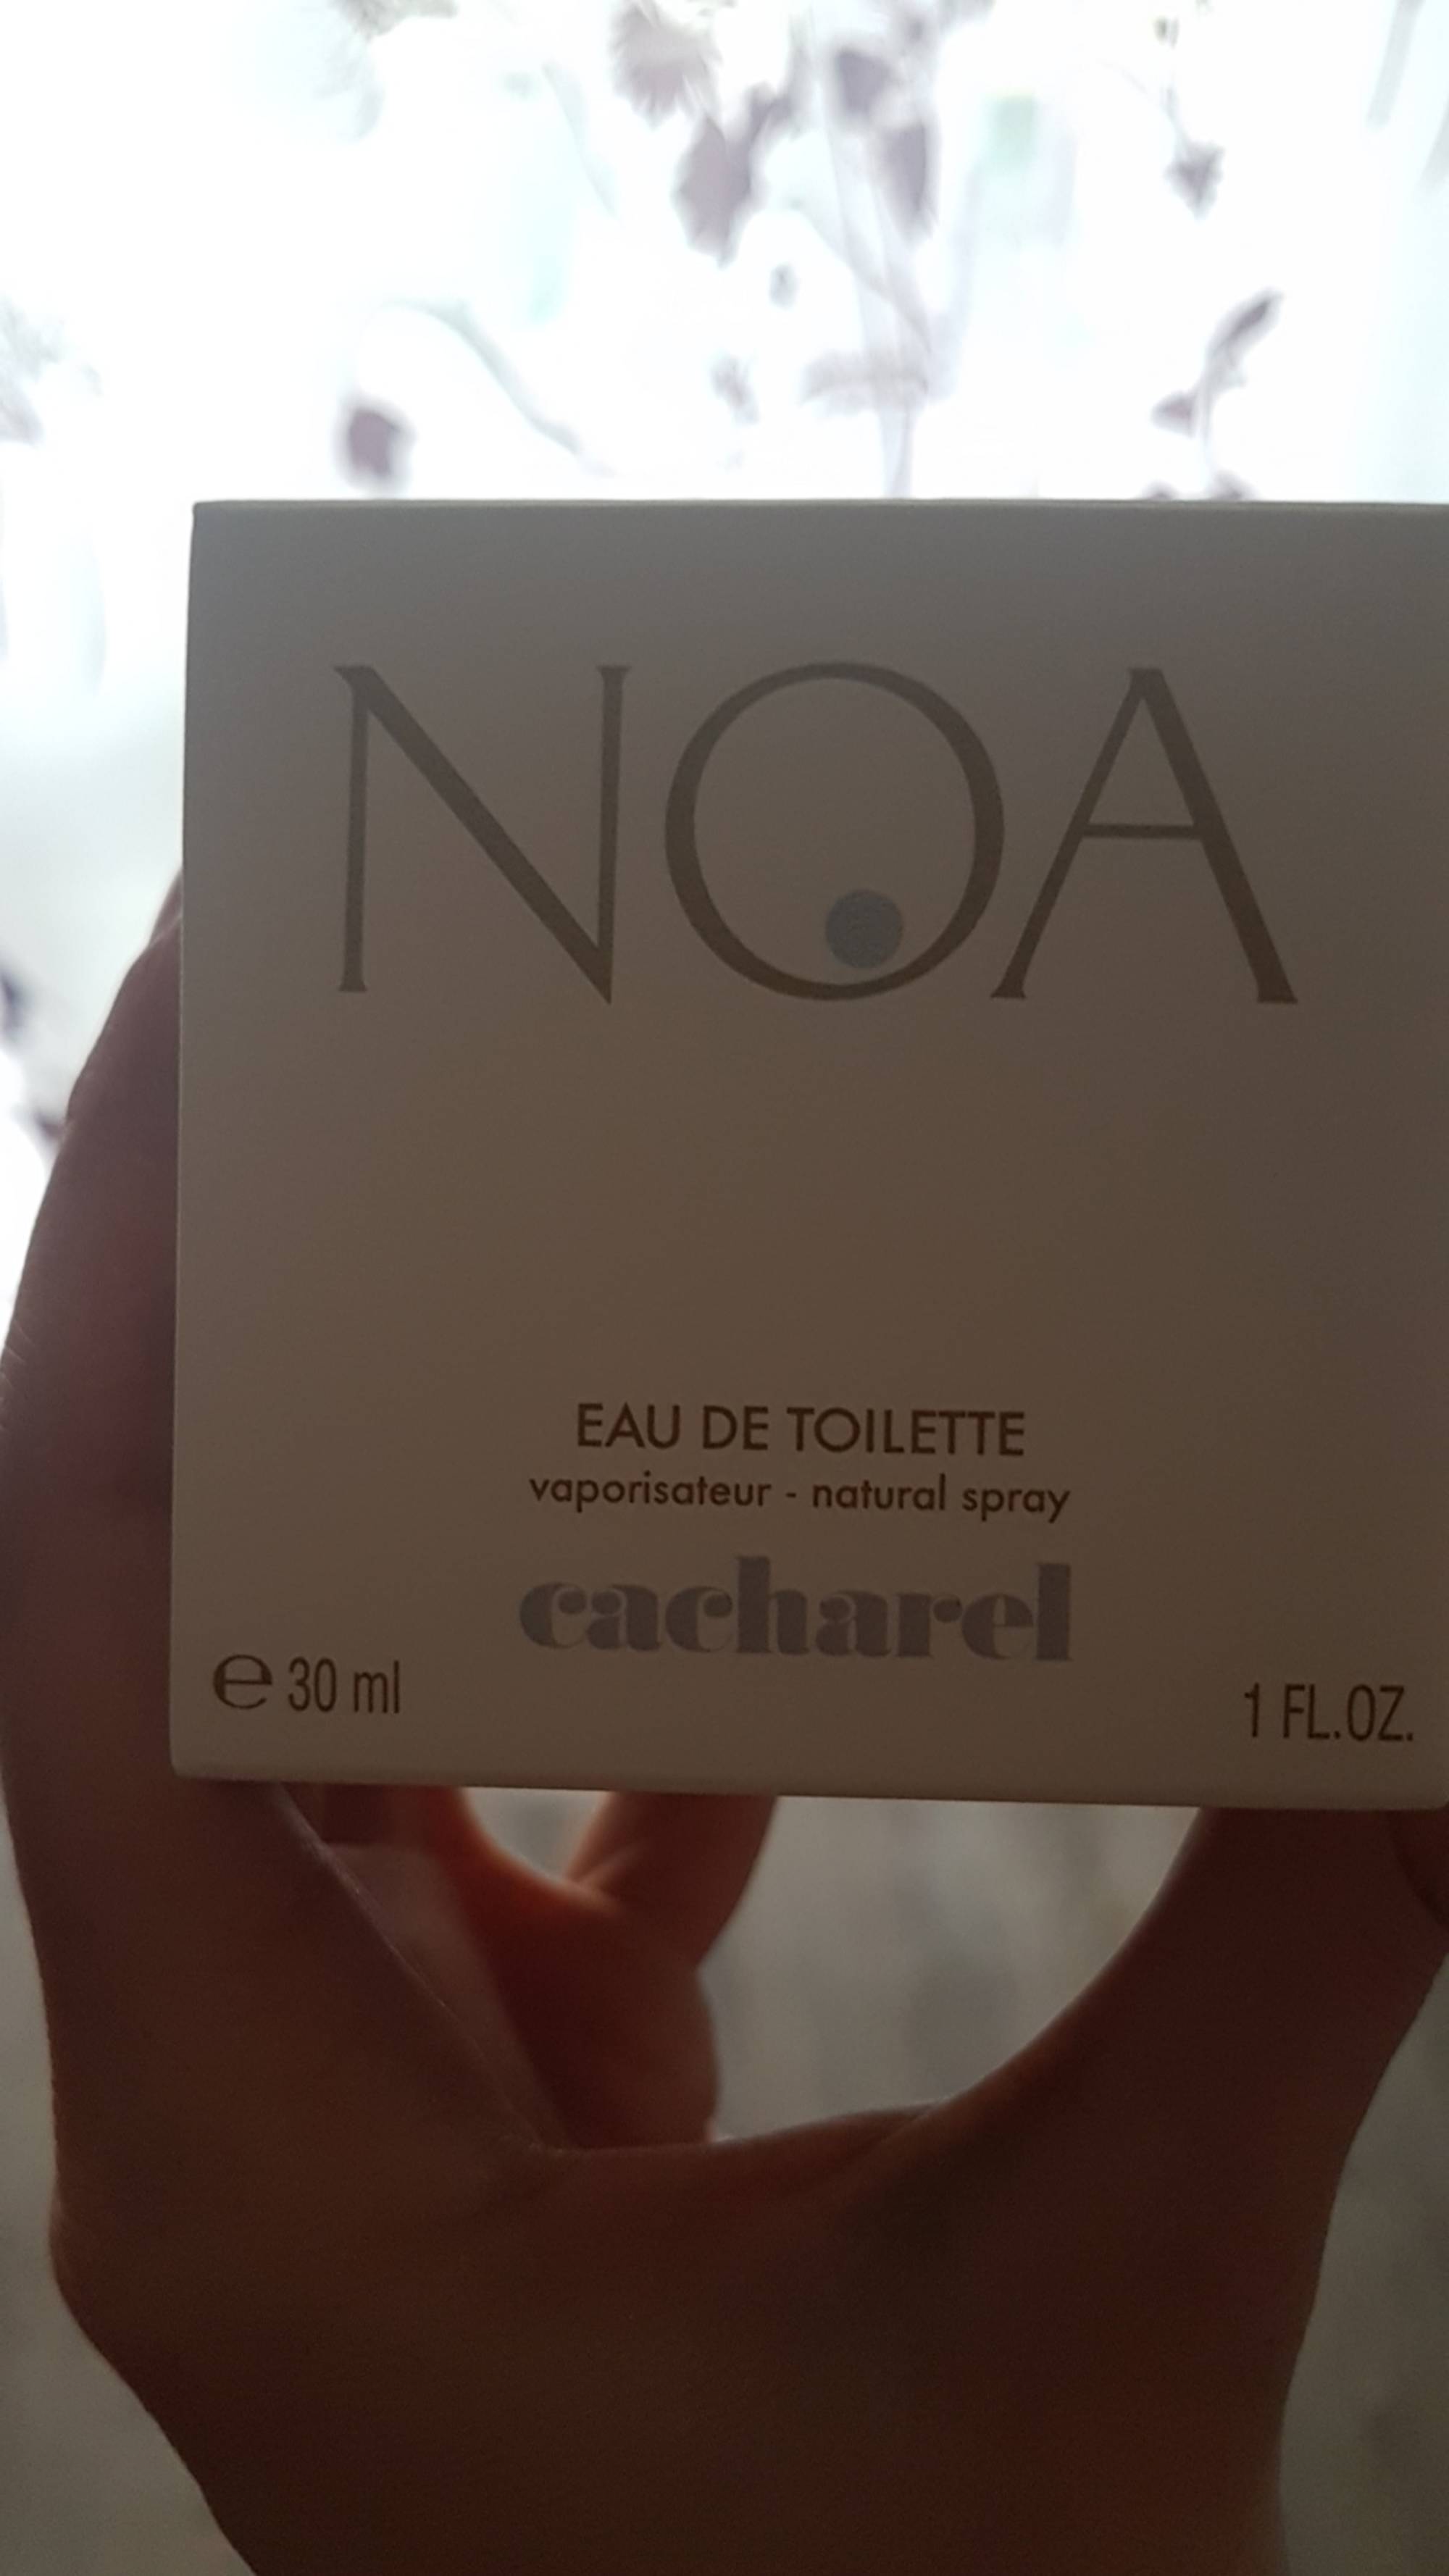 CACHAREL - Noa - Eau de toilette